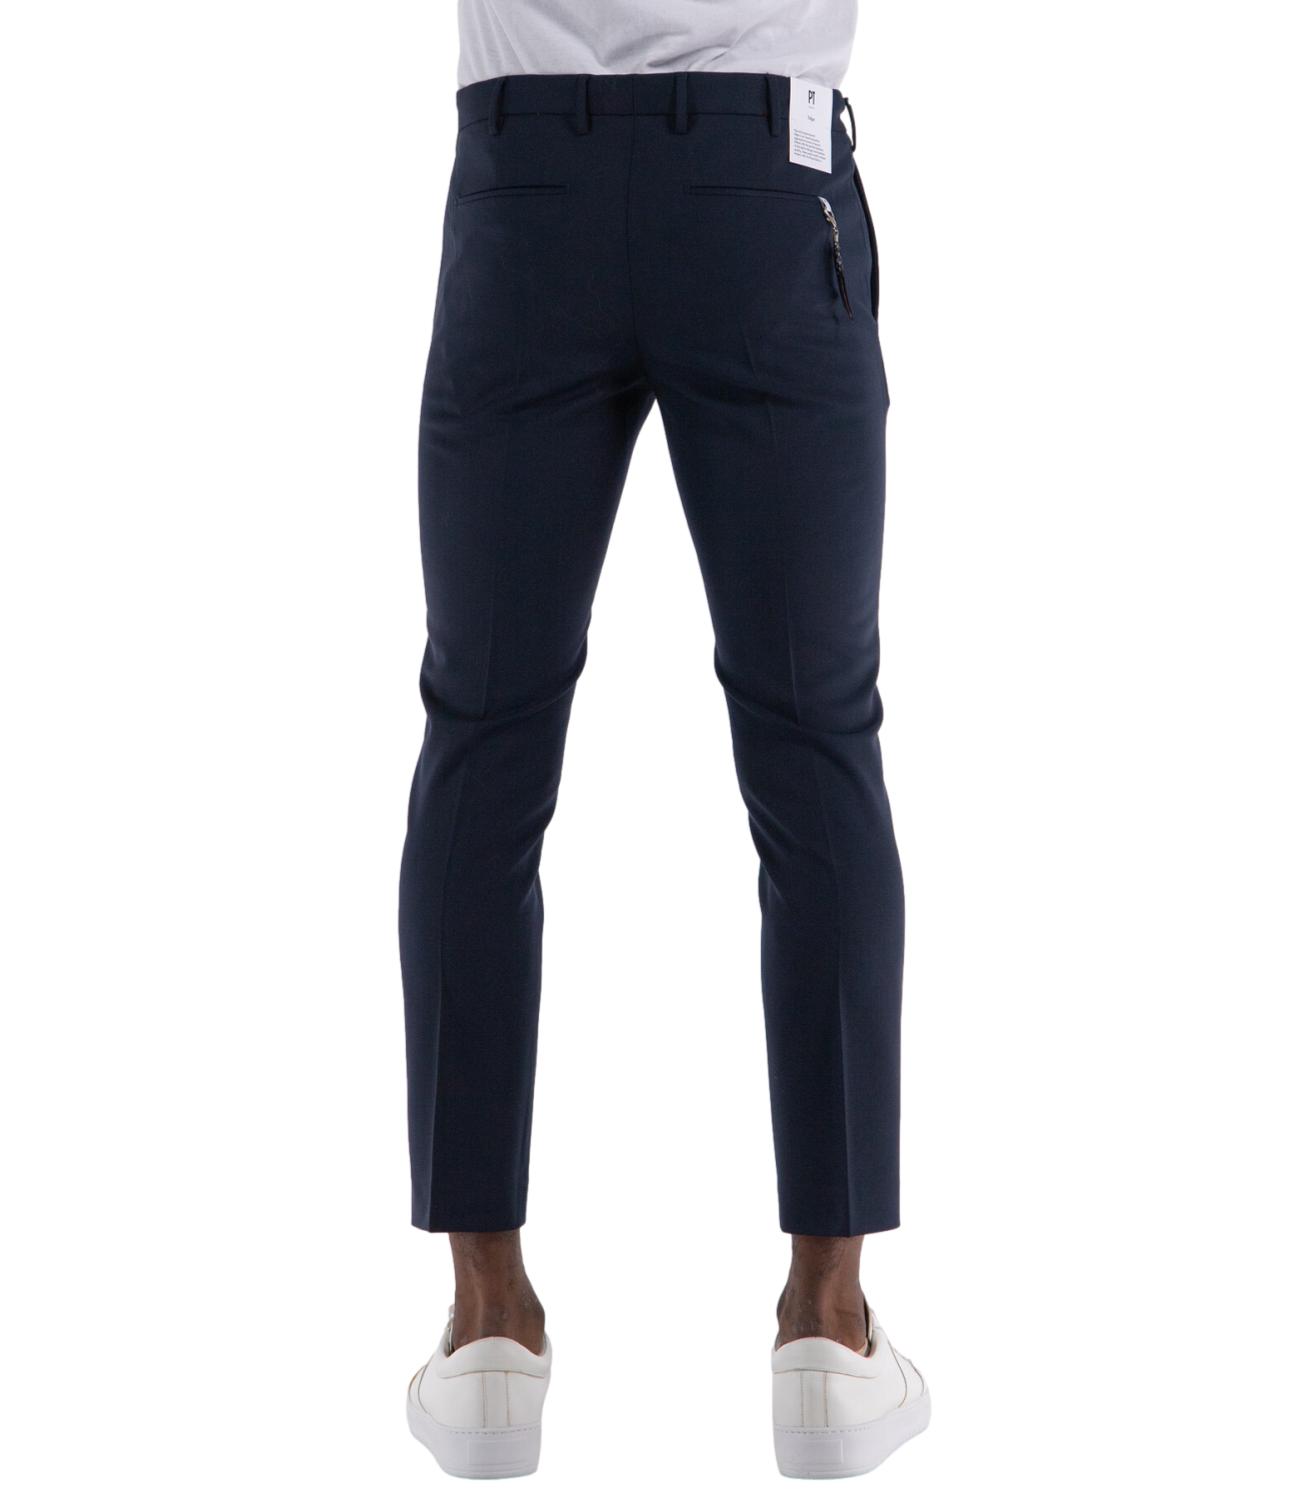 PT Torino pantalone uomo color blu navy